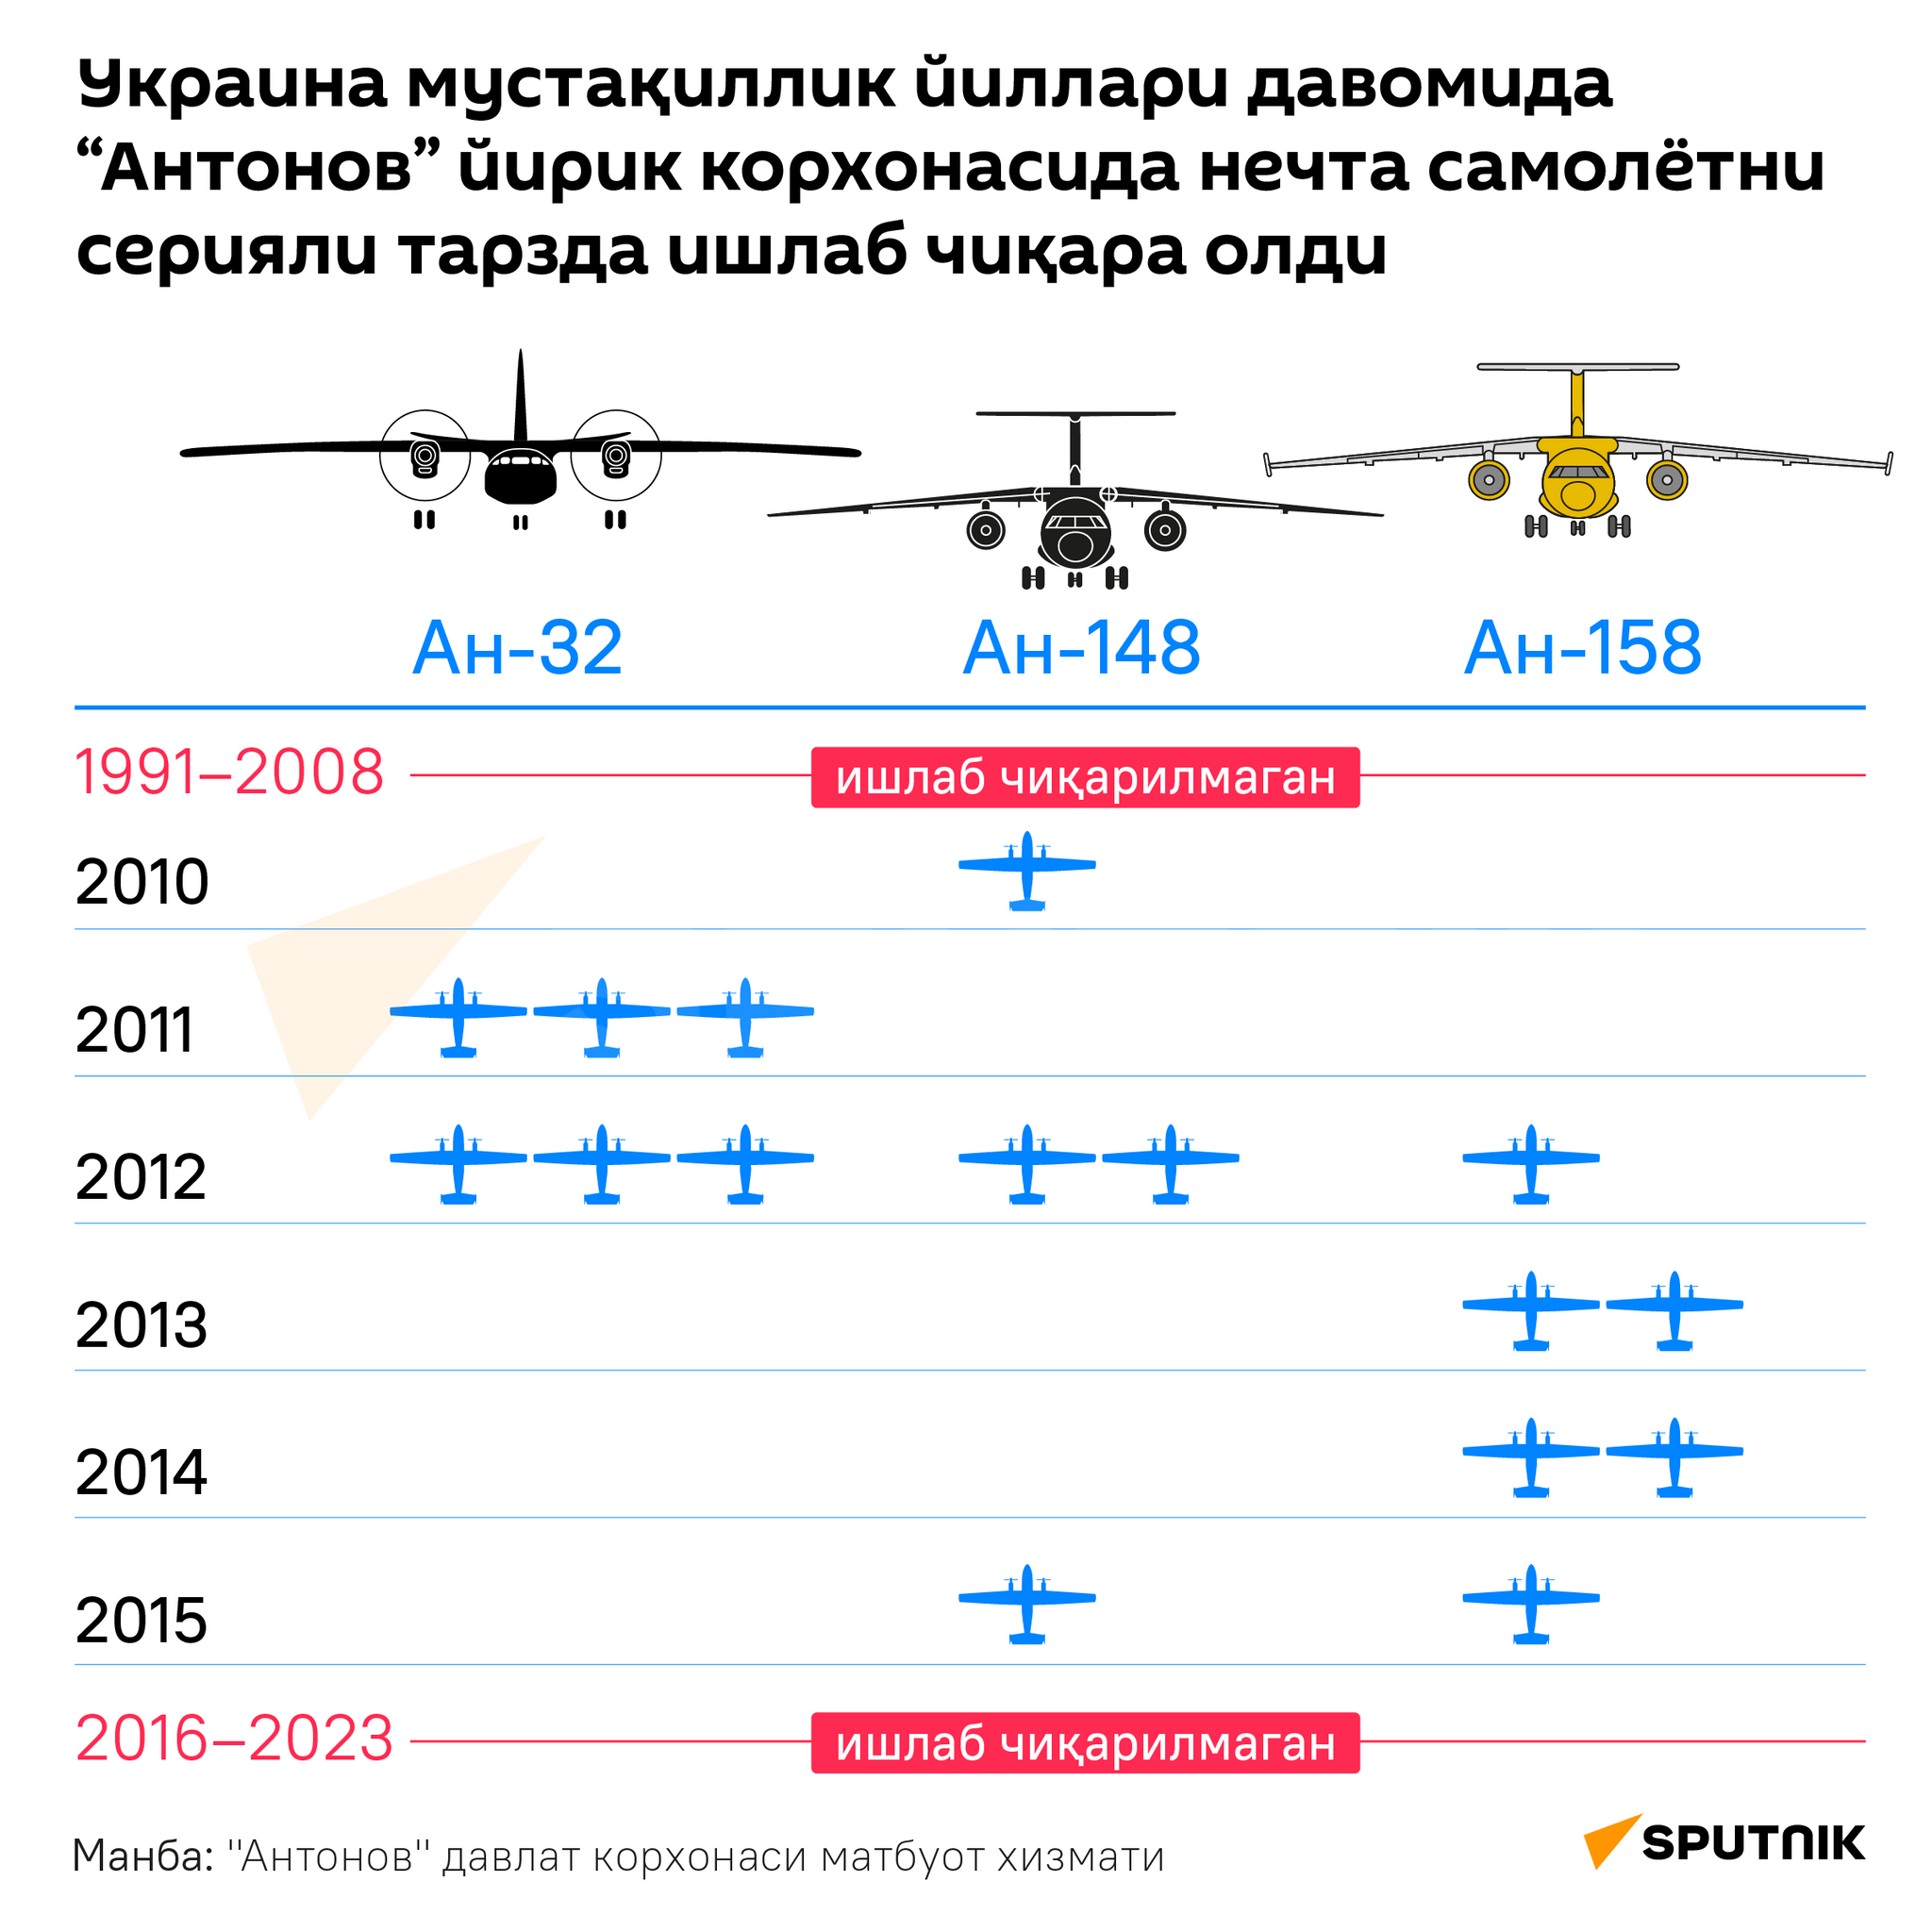 Сколько серийных самолетов смогла произвести Украина за годы независимости на крупнейшем предприятии Антонов. - Sputnik Ўзбекистон